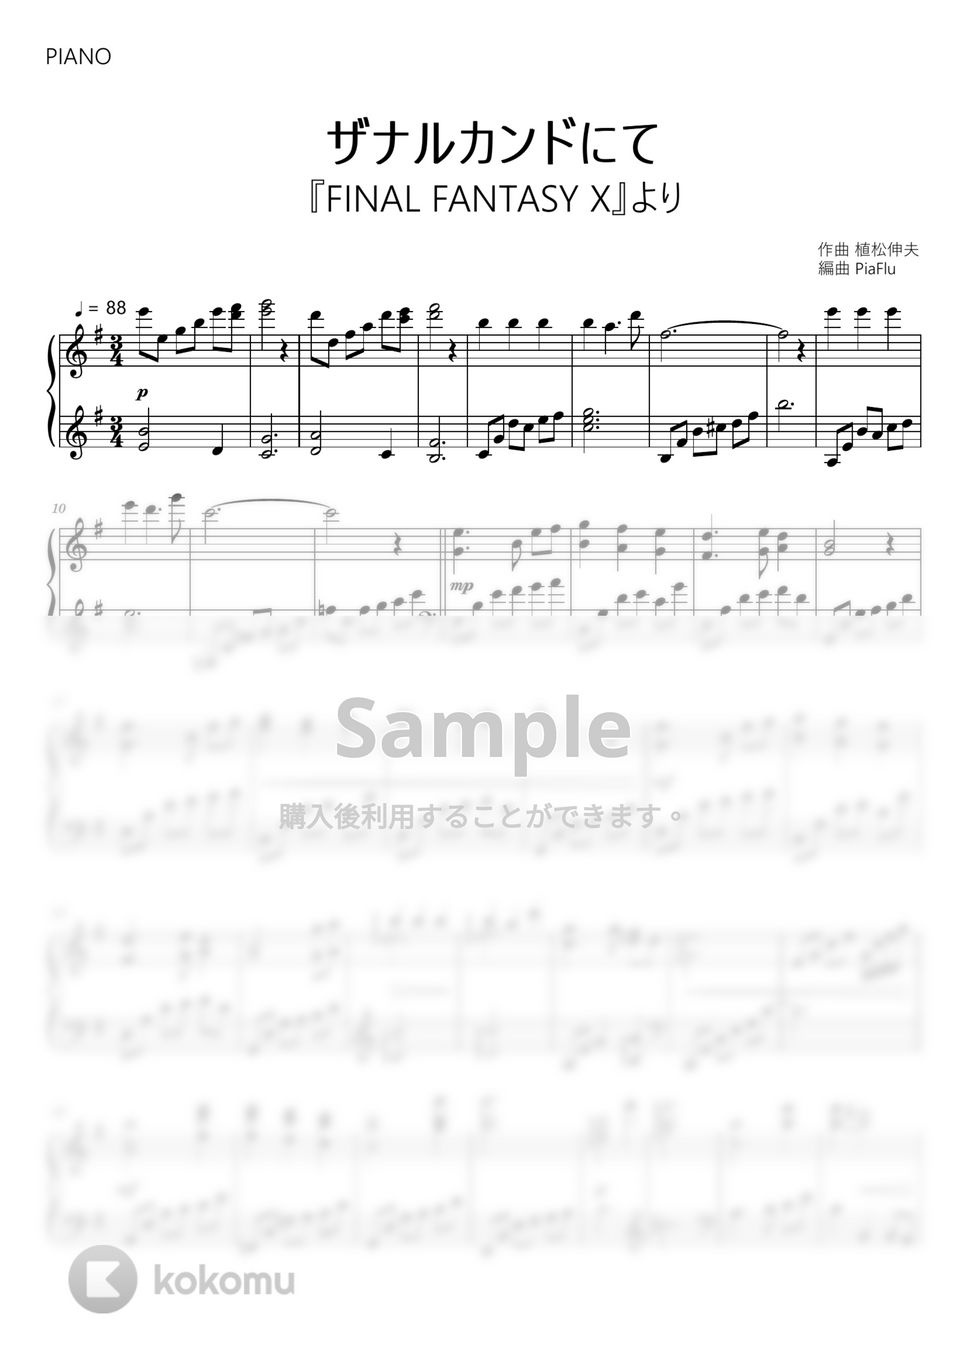 ファイナルファンタジーX ピアノ 楽譜 ファイナルファンタジー10 FF10